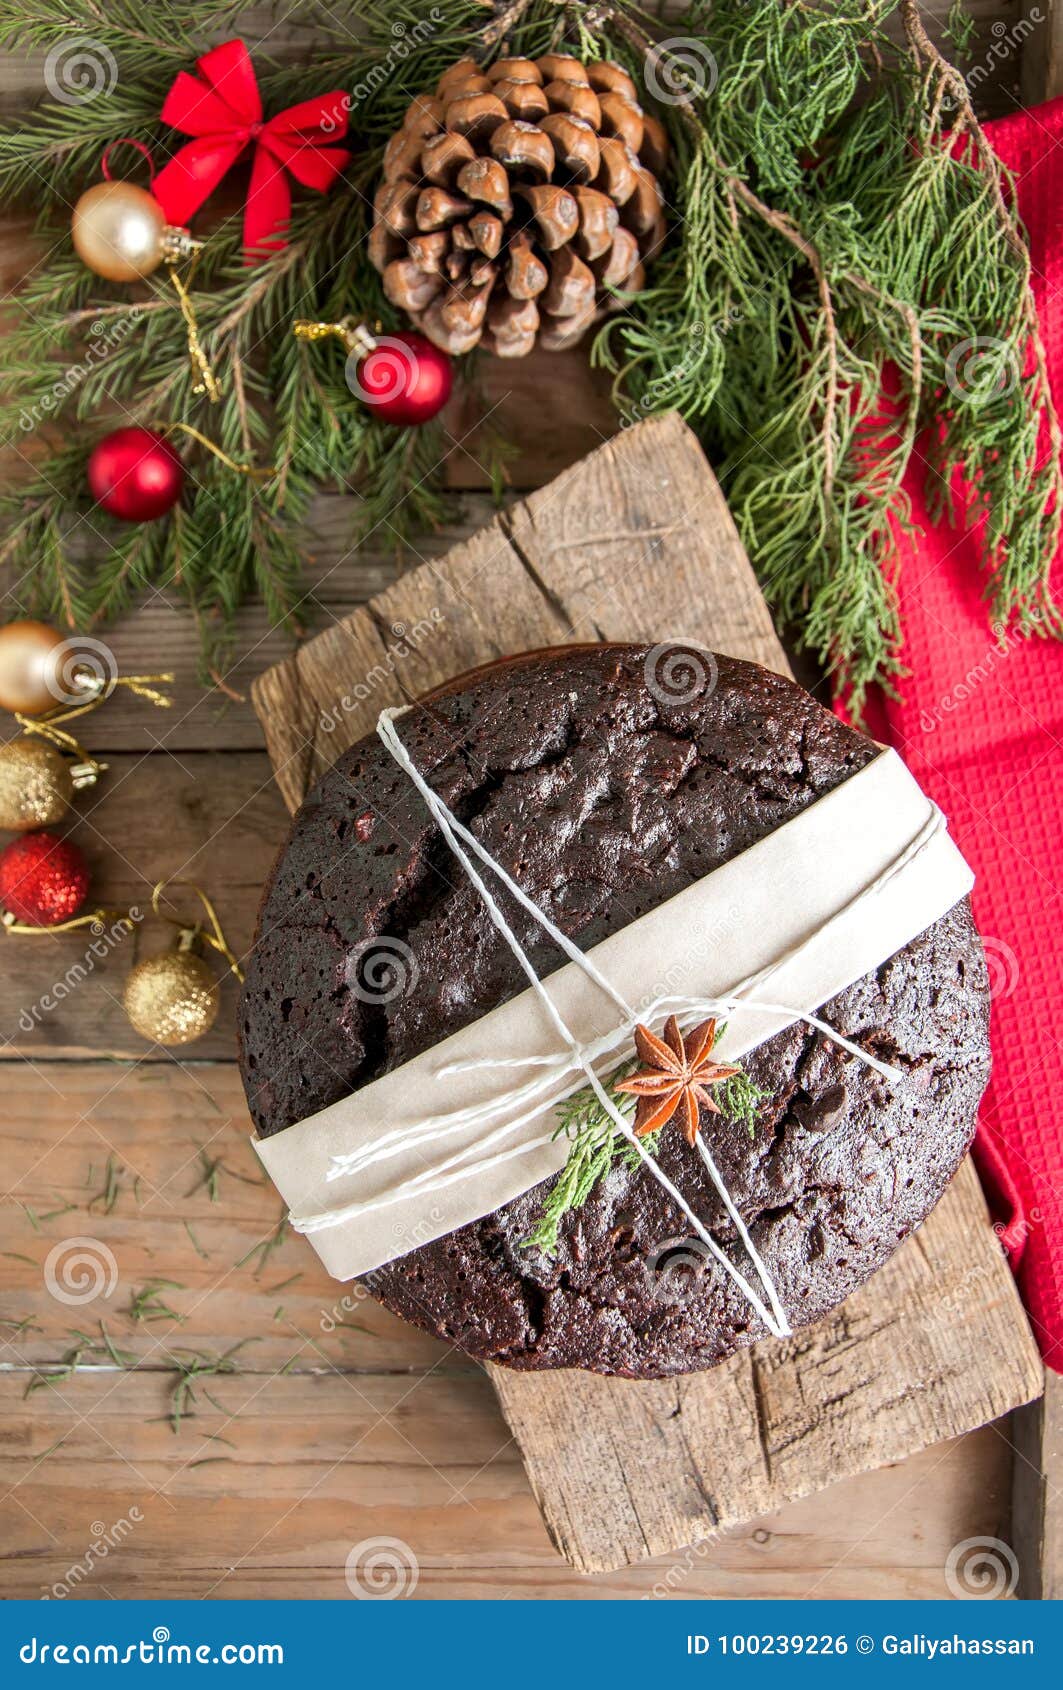 Chocolate Christmas Pudding Stock Photo - Image of bake, cinnamon ...